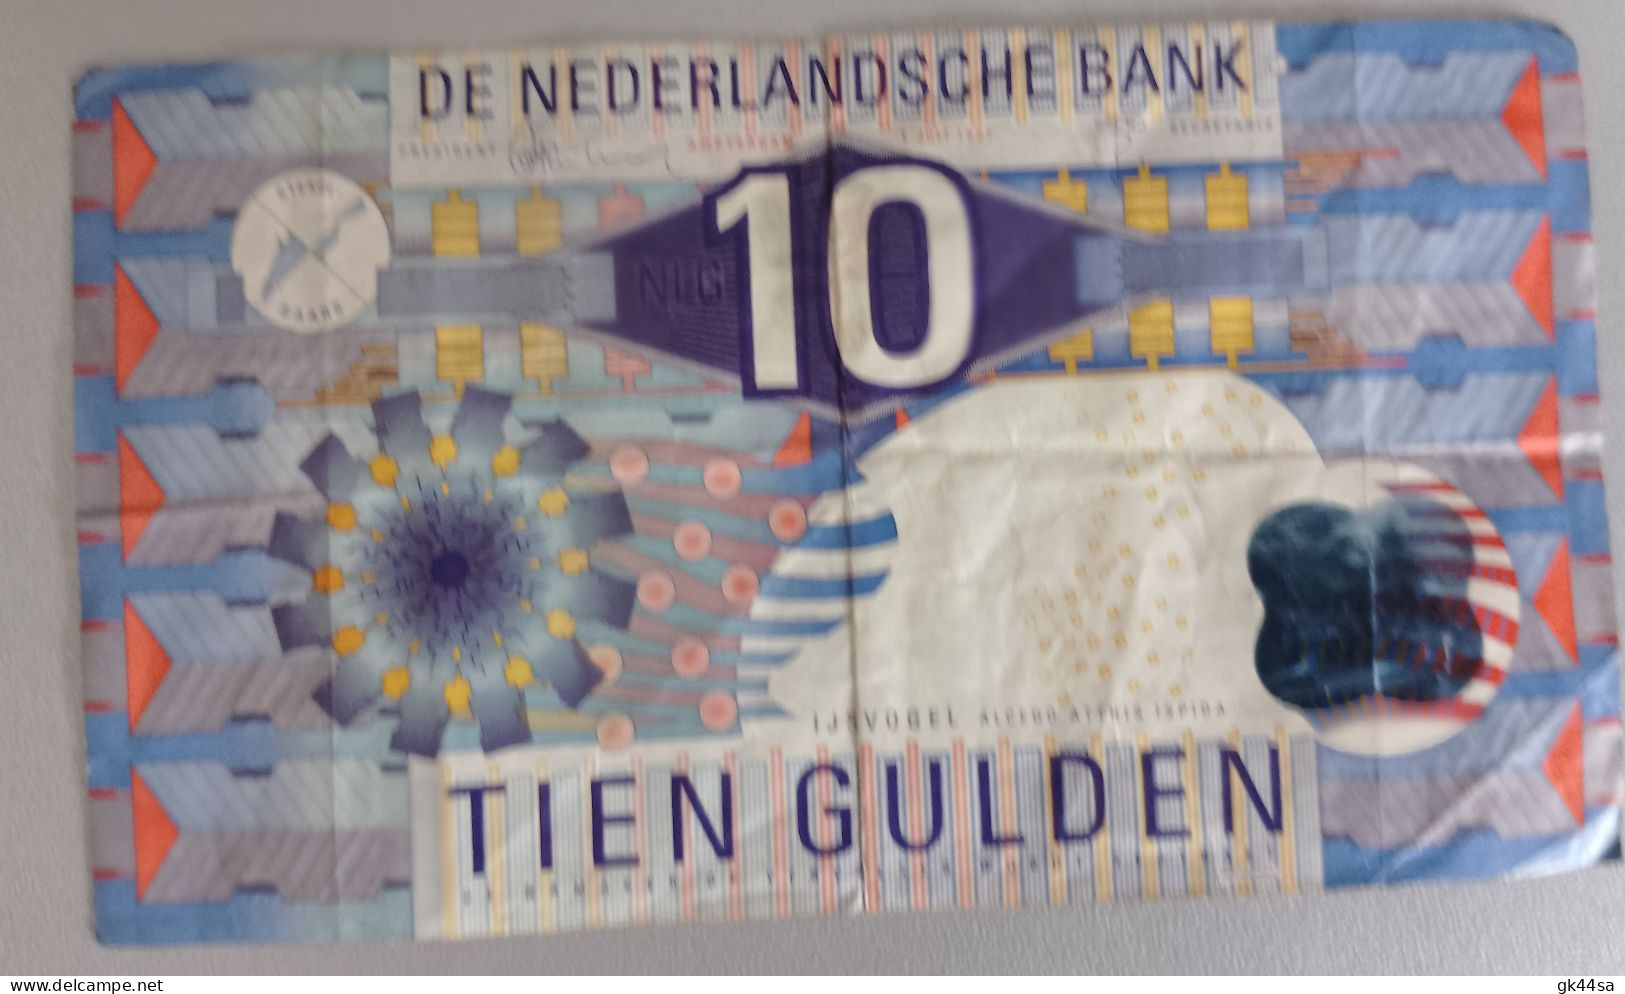 10 TIEN GULDEN - DE NEDERLANDSCHE BANK - AMSTERDAM 1997 - Zu Identifizieren